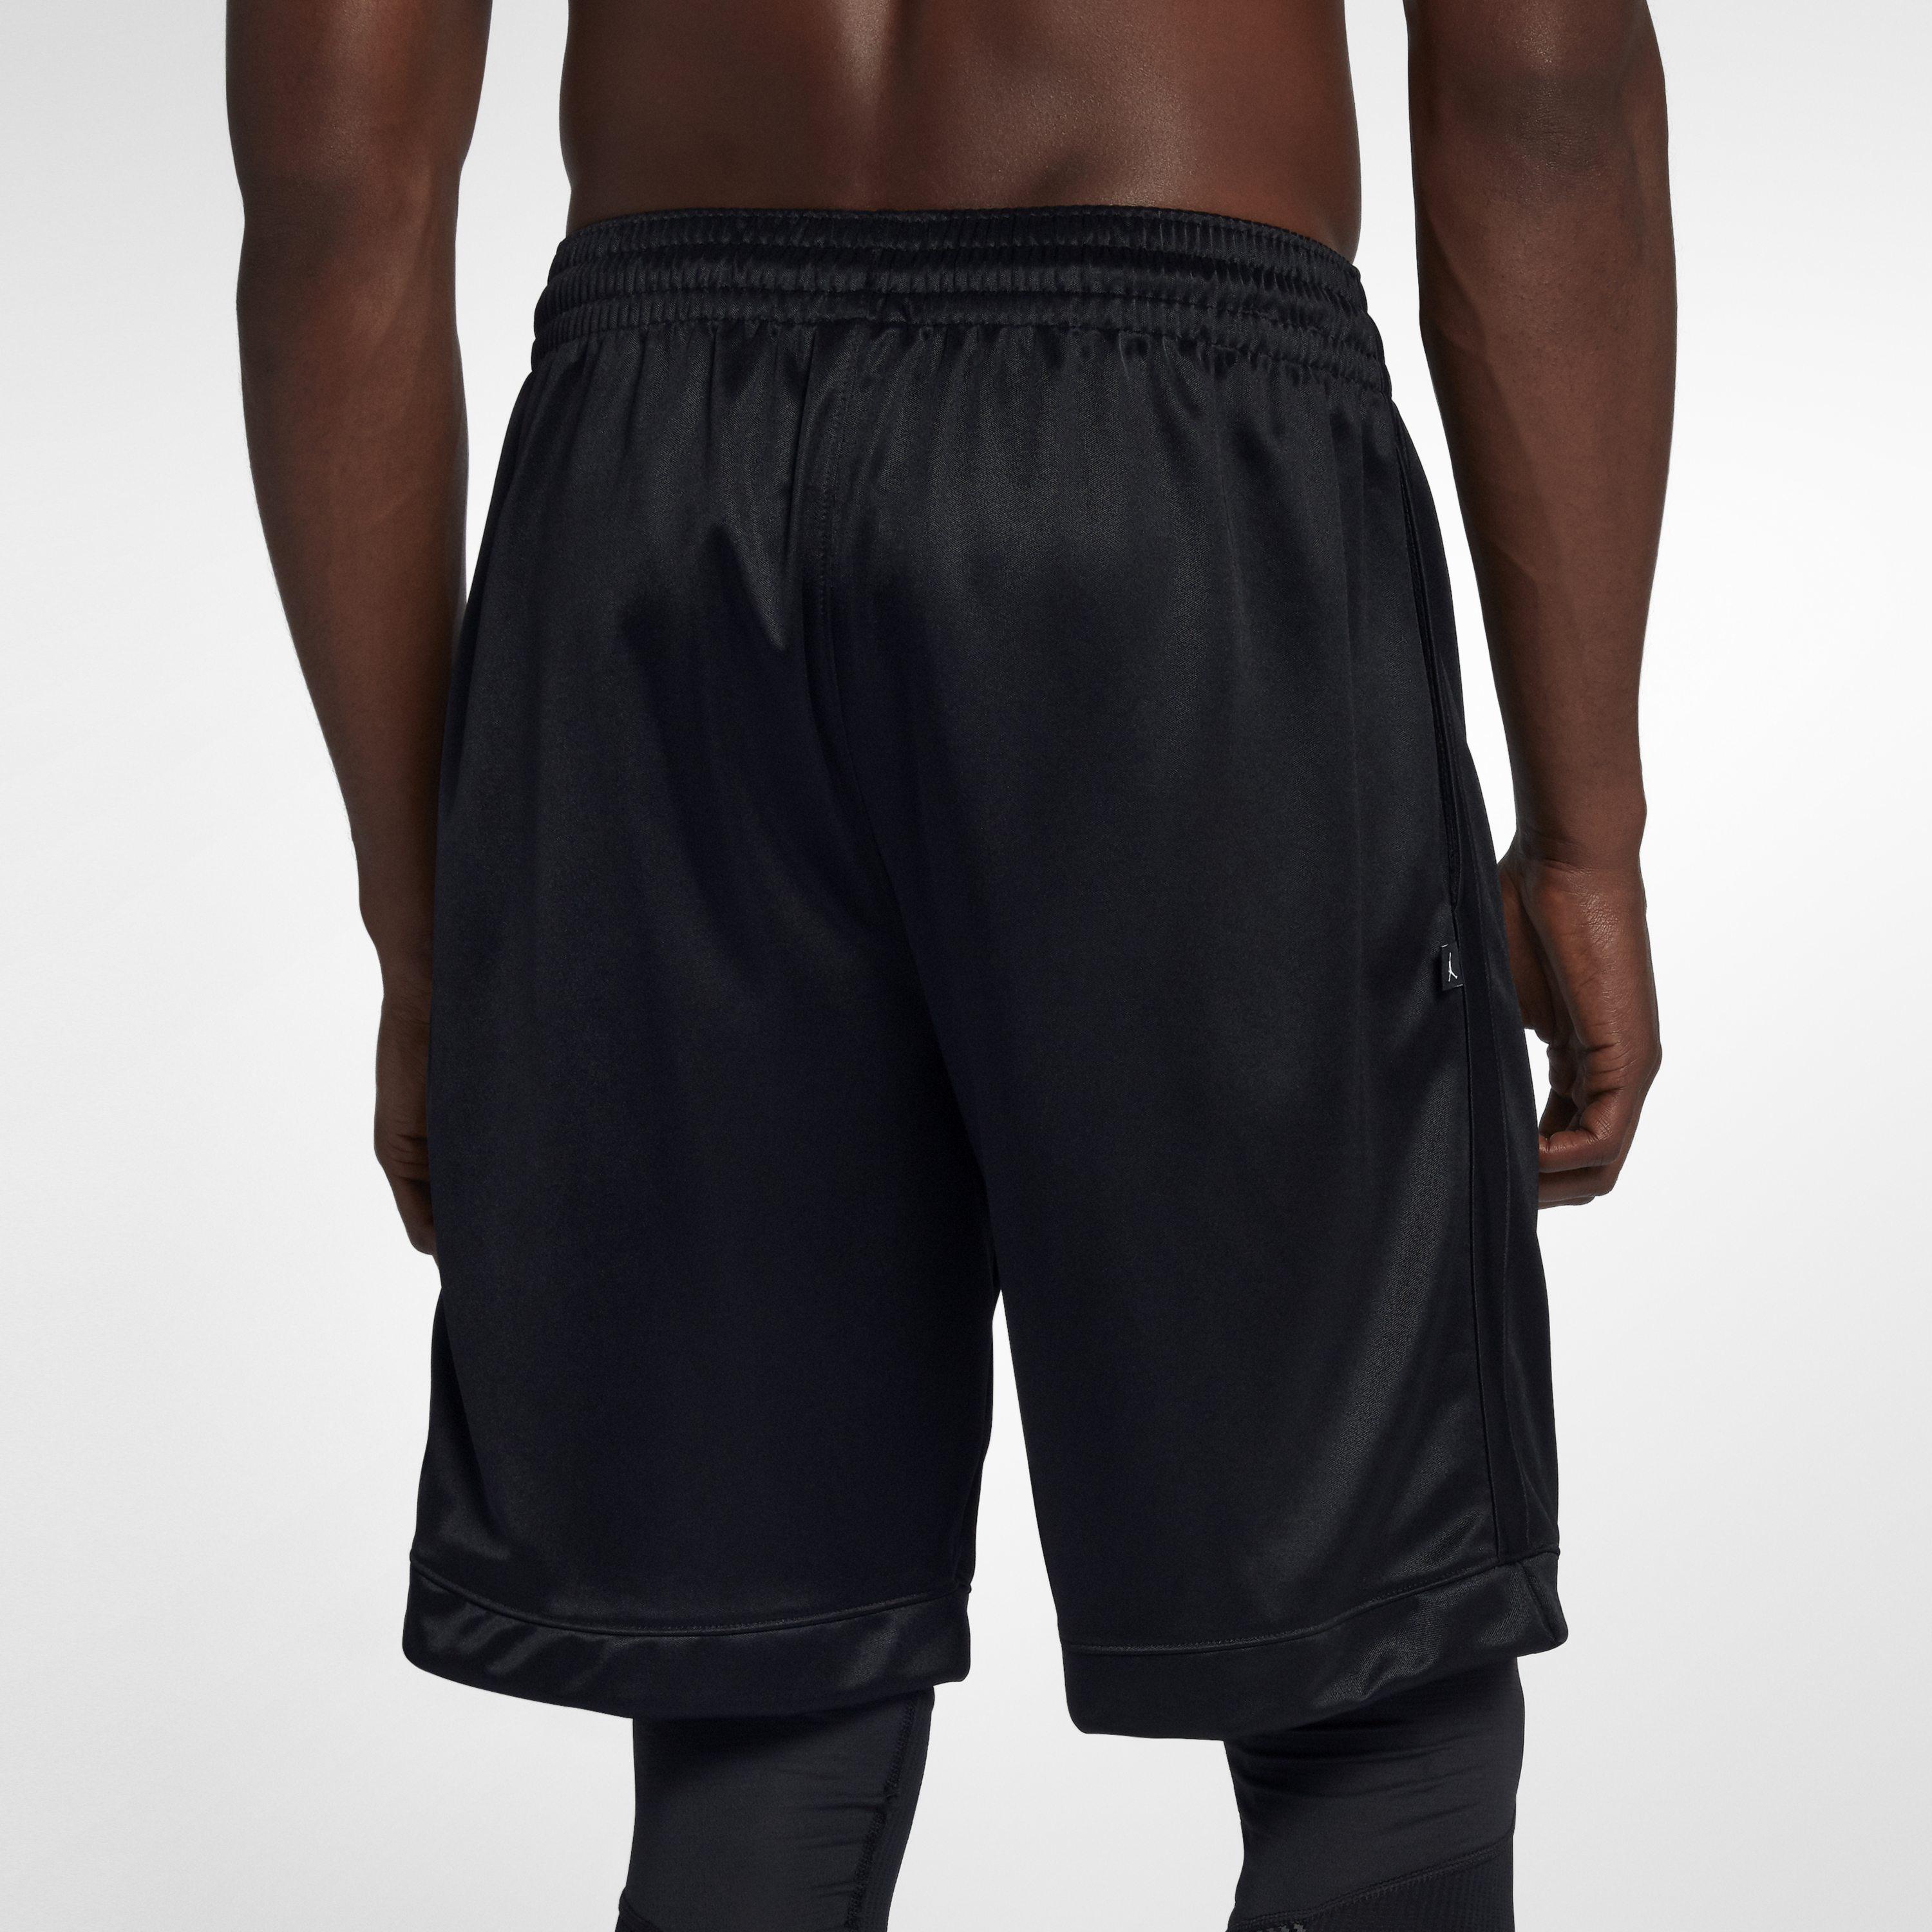 Nike Jordan Shimmer Basketball Shorts in Black for Men - Lyst